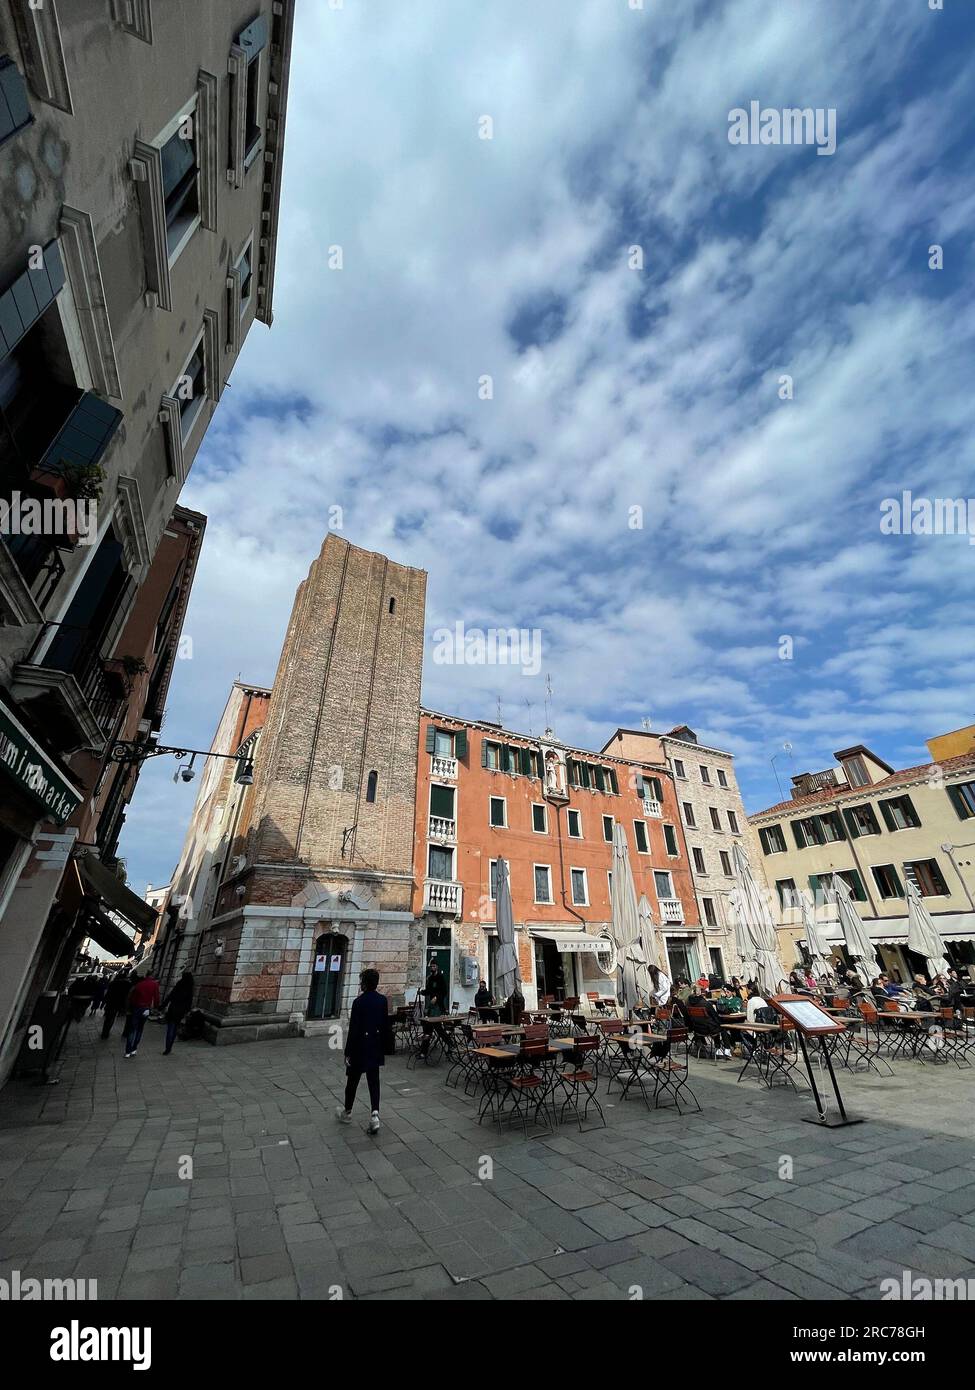 Venice, Italy - April 2, 2022: Campo Santa Margherita is a city square in the sestiere of Dorsoduro of Venice, Veneto, Italy. Stock Photo